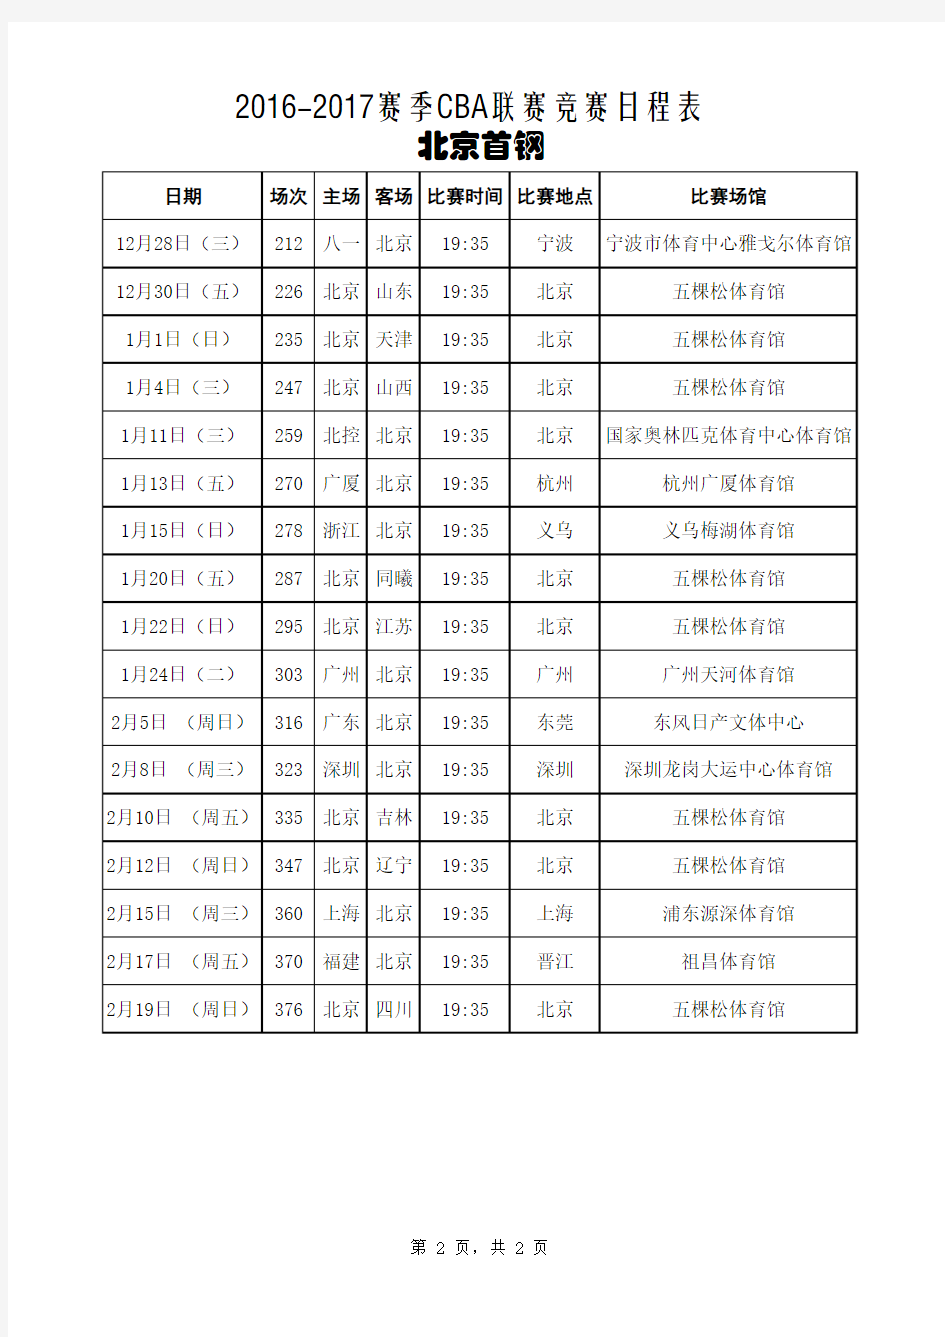 2016-2017赛季CBA联赛 北京首钢 日程表